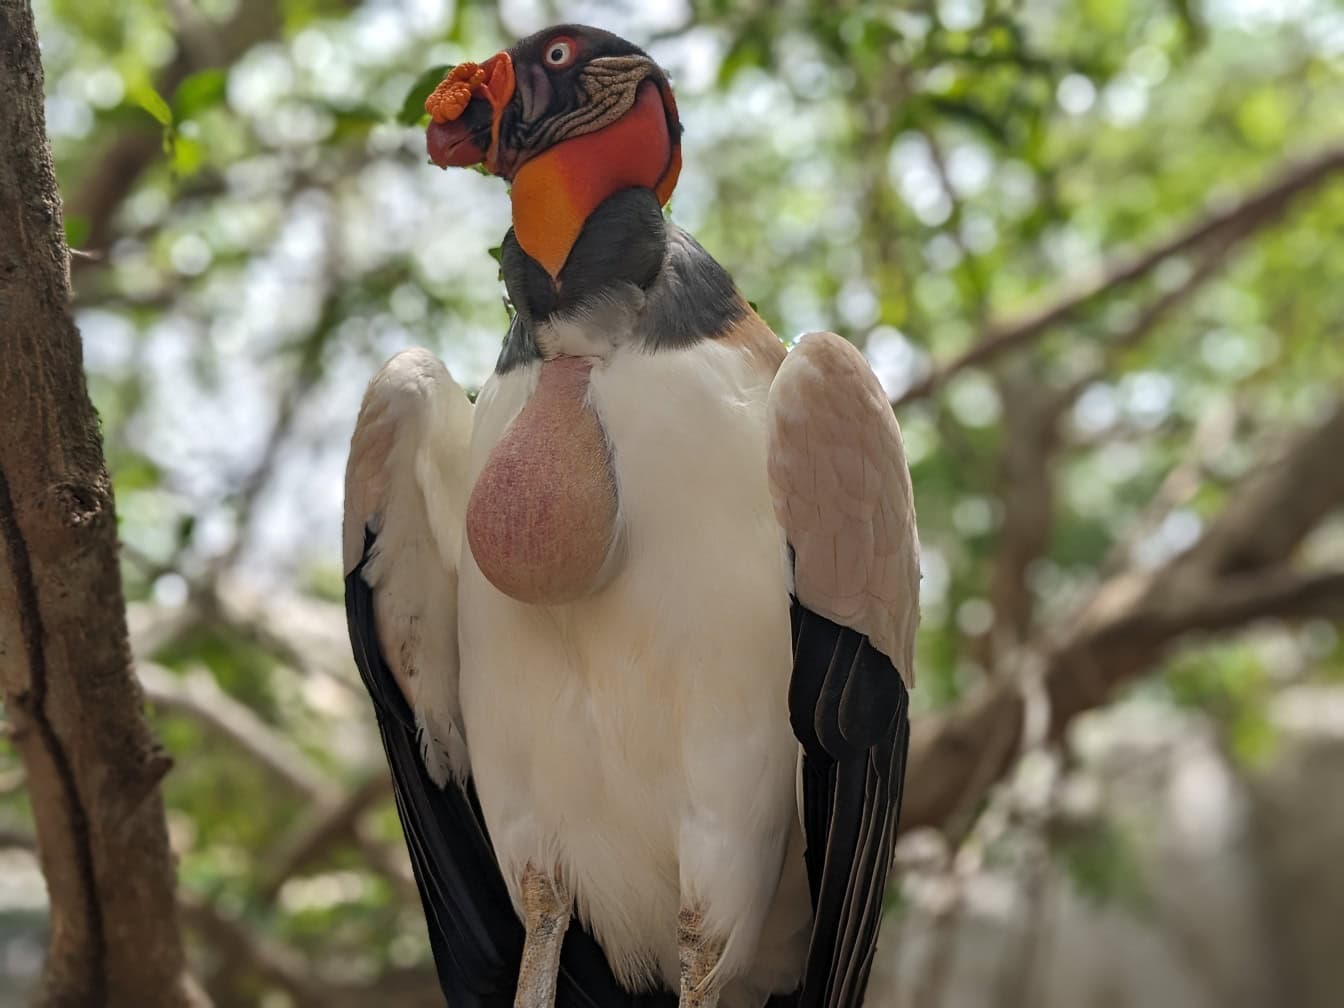 Kral akbaba (Sarcoramphus papa) bir ağaç dalında duran orta ve güney Amerika’ya özgü büyük bir kuştur